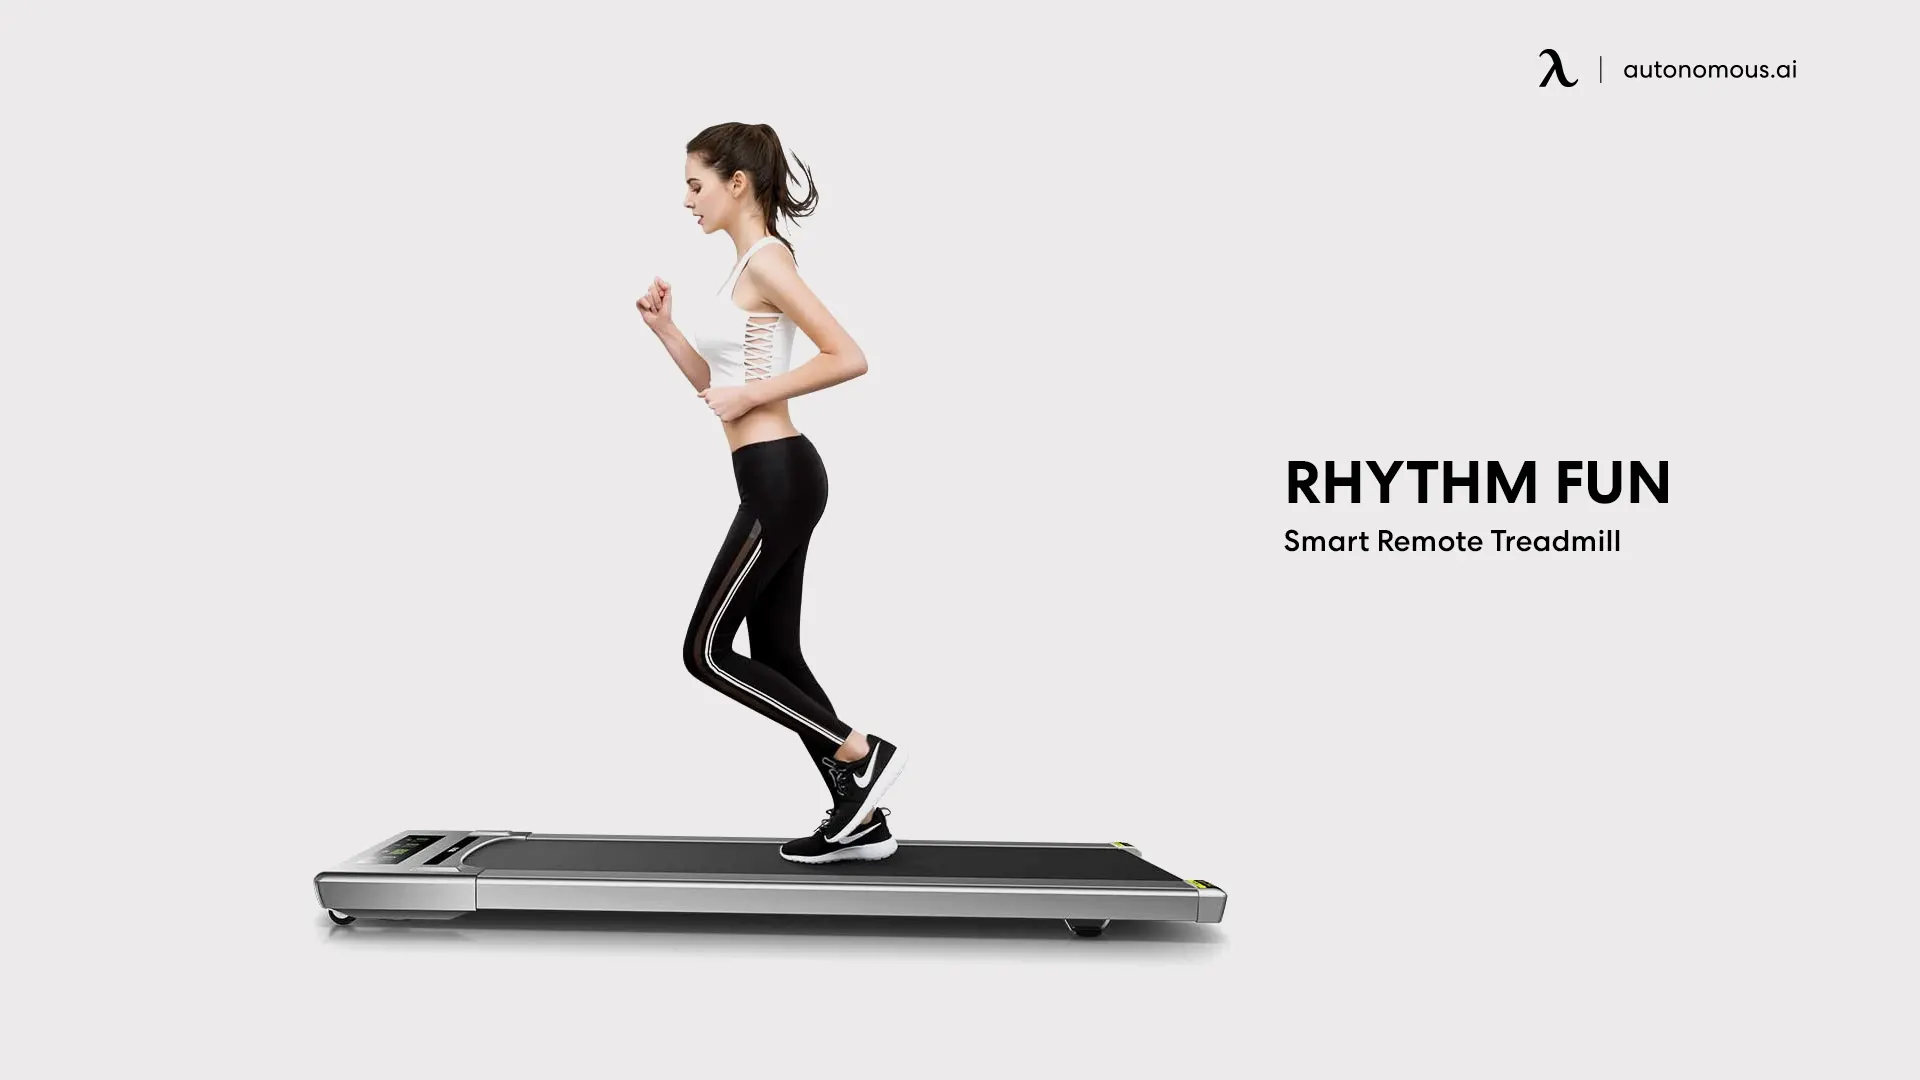 RHYTHM FUN Smart Remote Treadmill